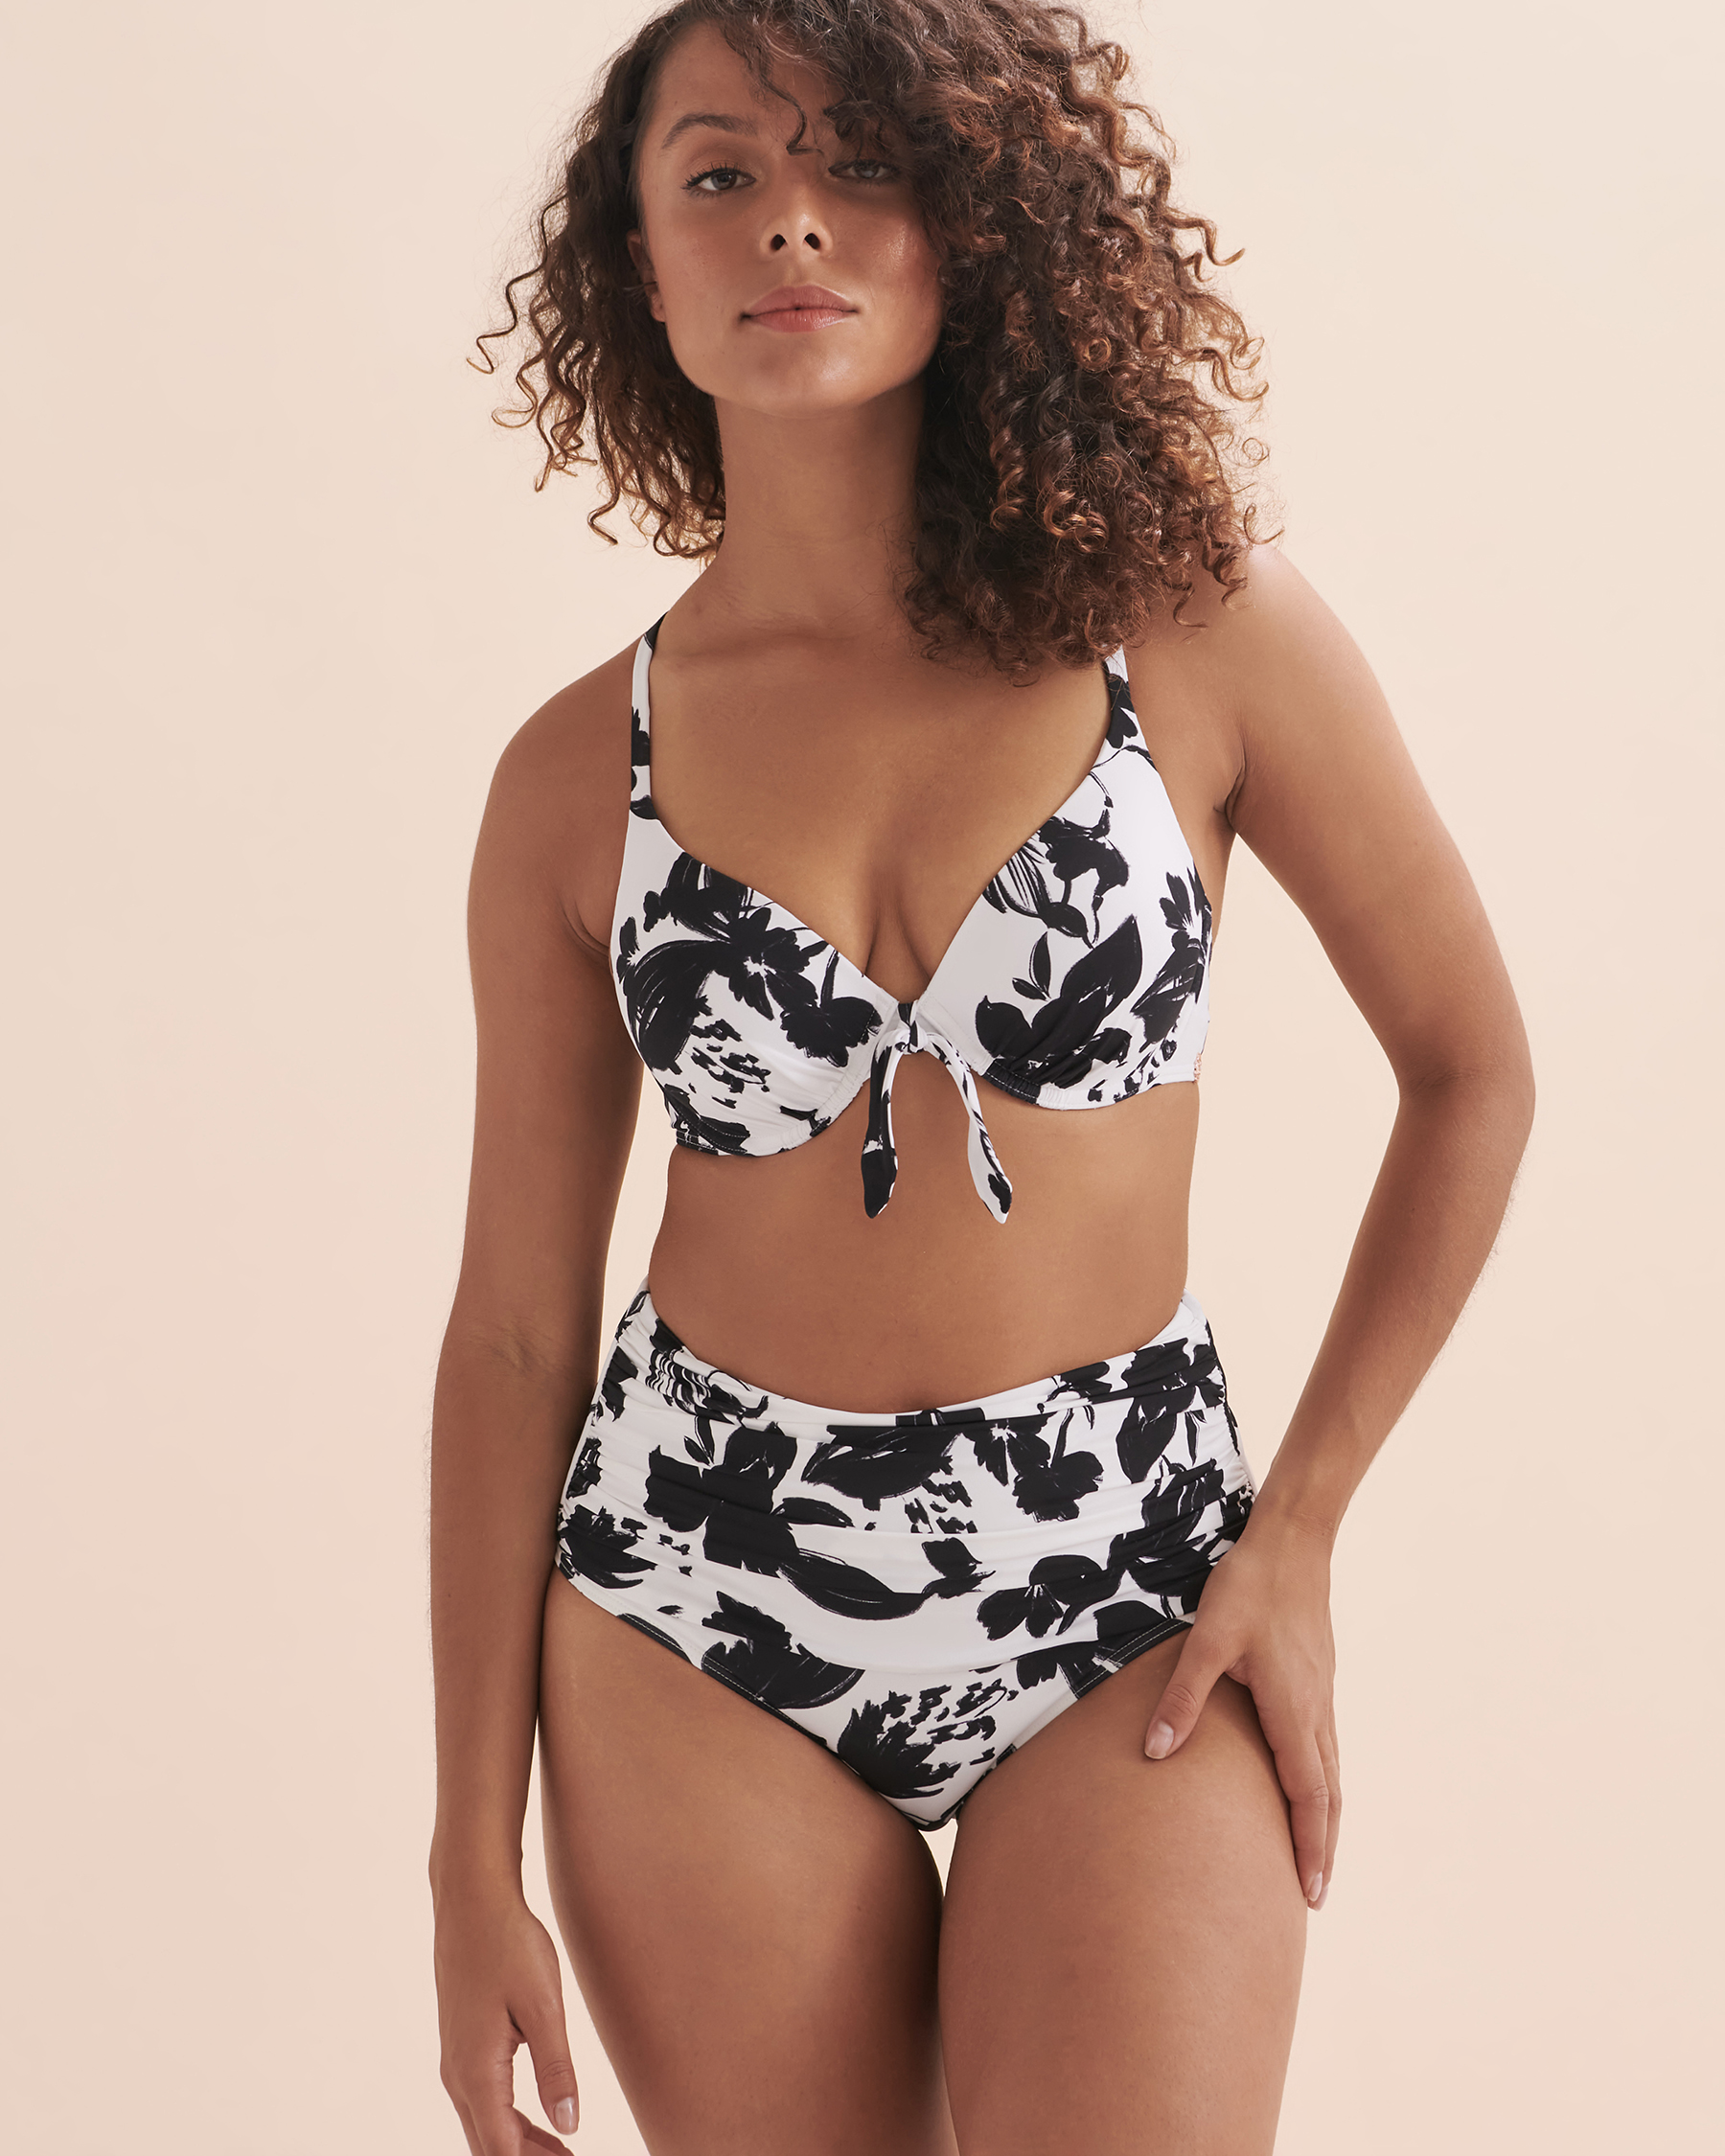 TURQUOISE COUTURE Haut de bikini push-up plongeant Black & White Abstract Floral noir et blanc 01100221 - Voir3